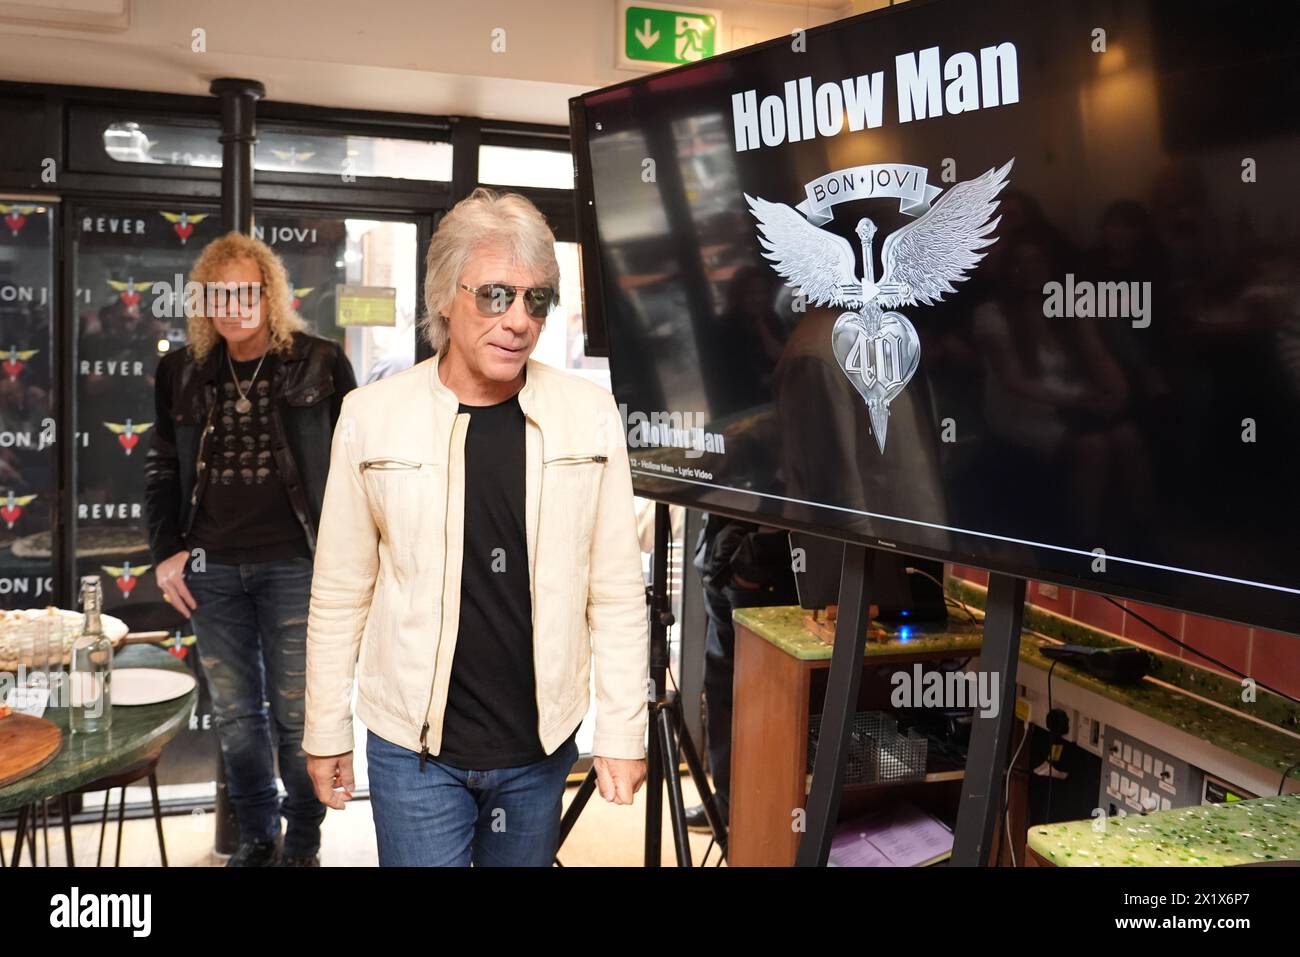 Jon Bon Jovi und David Bryan von der amerikanischen Rockband Bon Jovi mit Fans während einer Pizza-Party und einer Hörveranstaltung für ihr neues Album „Forever“ im Zentrum Londons. Fans, die zum Hören-Event für das Album eingeladen wurden, das am 7. Juni veröffentlicht wird, waren überrascht, als ihre Musikgöttin sich der Londoner Versammlung anschloss. Bilddatum: Donnerstag, 18. April 2024. Stockfoto